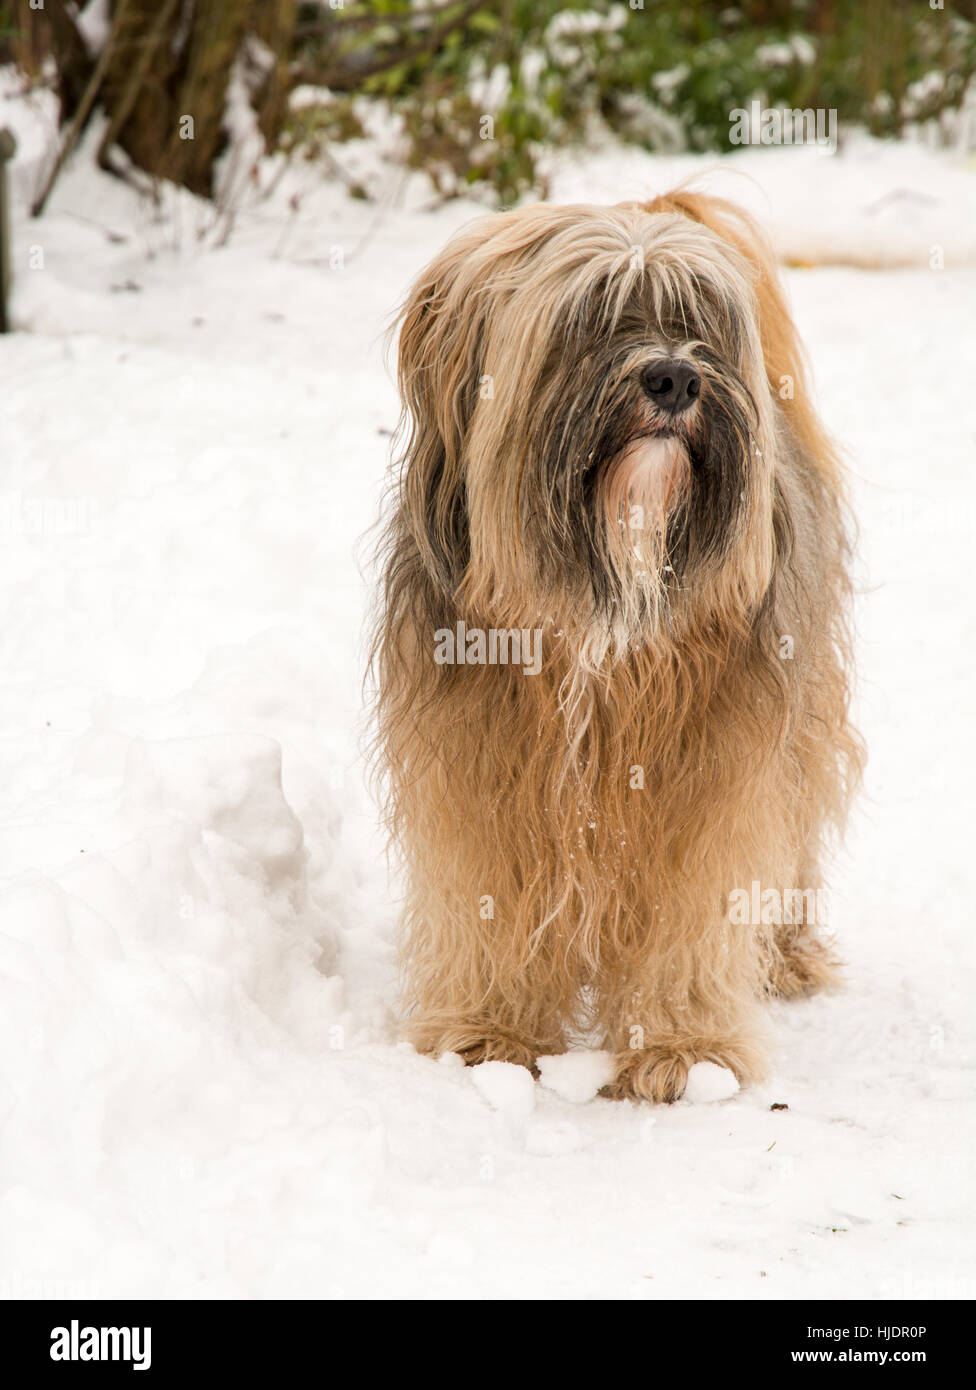 Capelli lunghi Tibetan Terrier cane in piedi nella neve Foto Stock